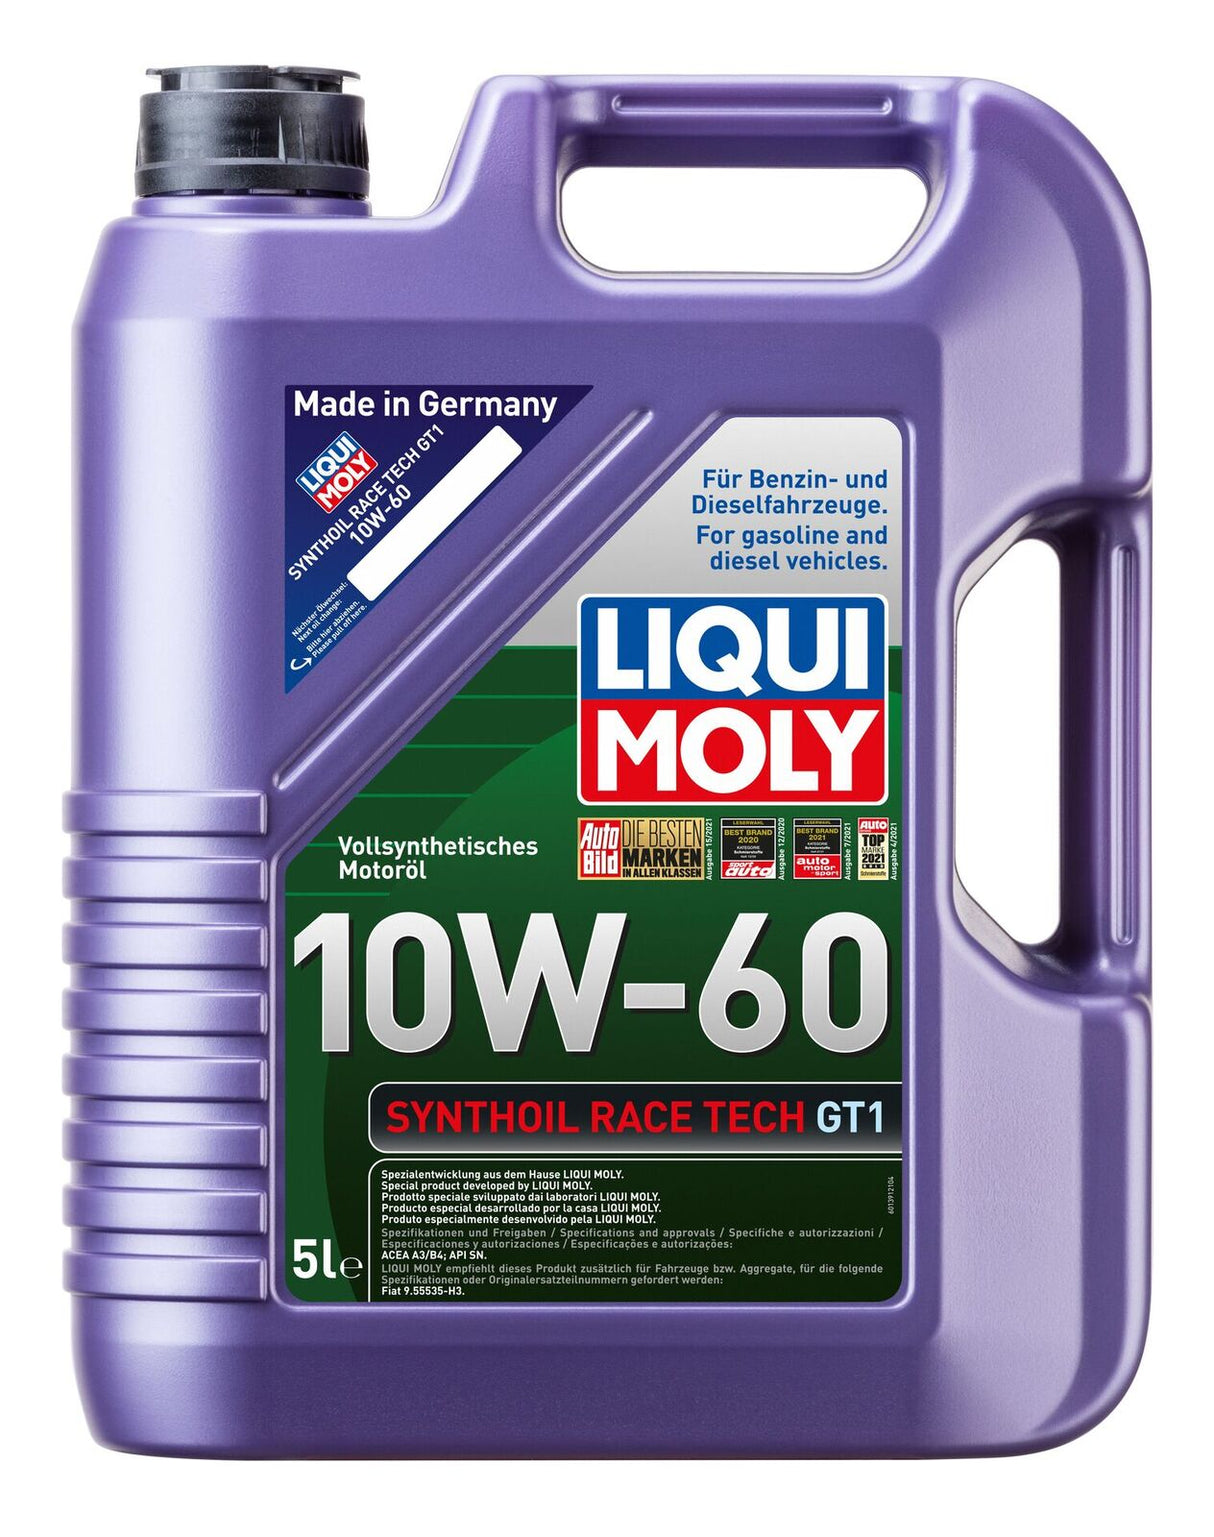 LIQUI MOLY 5W-30 Top Tec 4600 5L, Car Accessories, Car Workshops